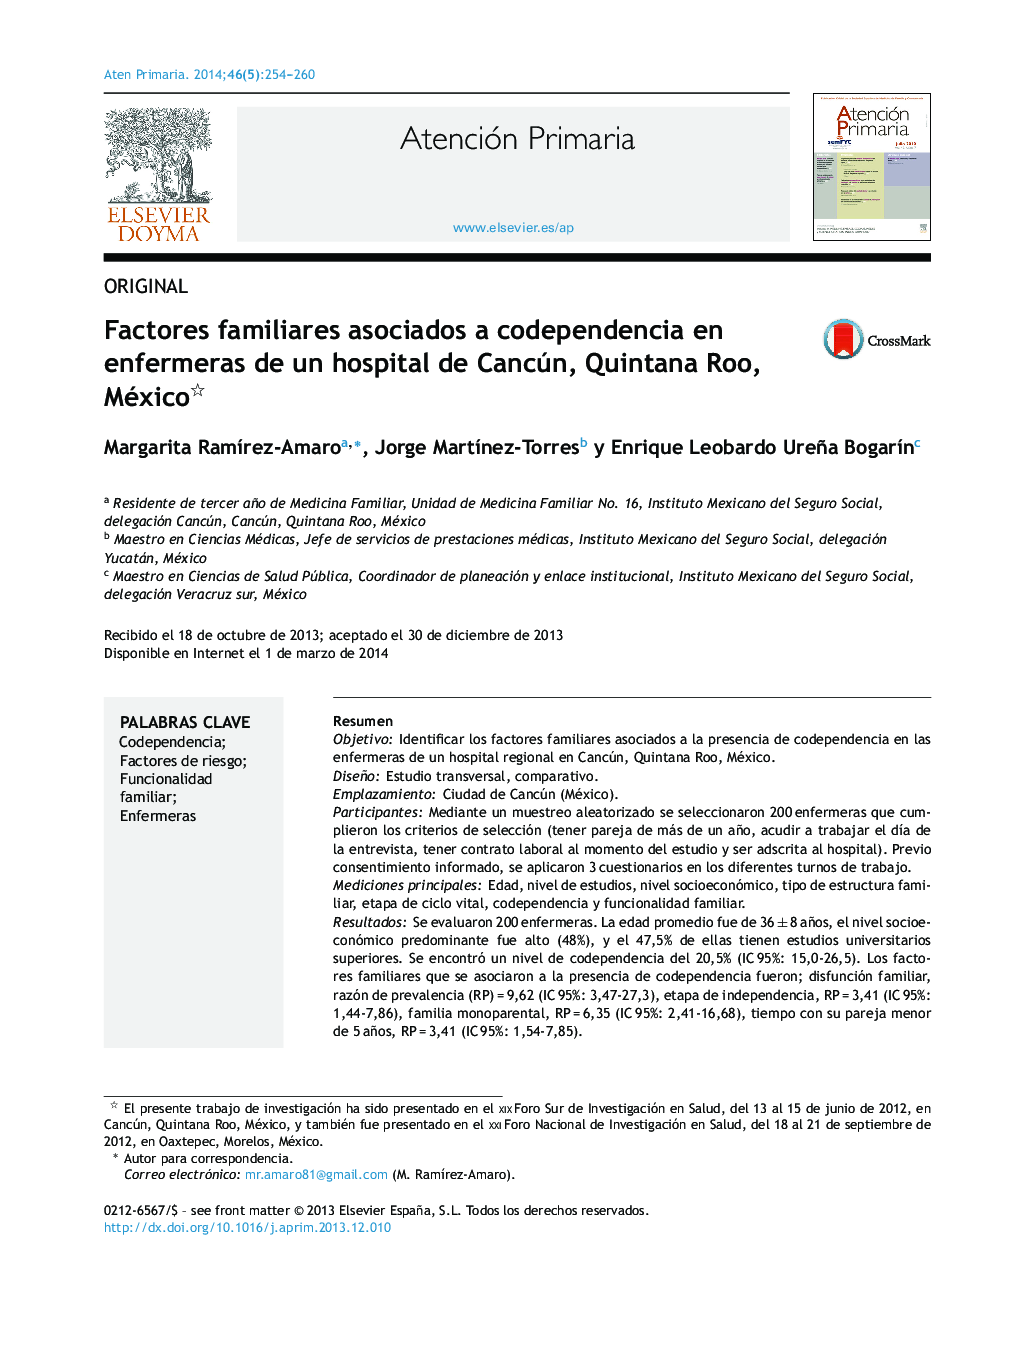 Factores familiares asociados a codependencia en enfermeras de un hospital de Cancún, Quintana Roo, México 